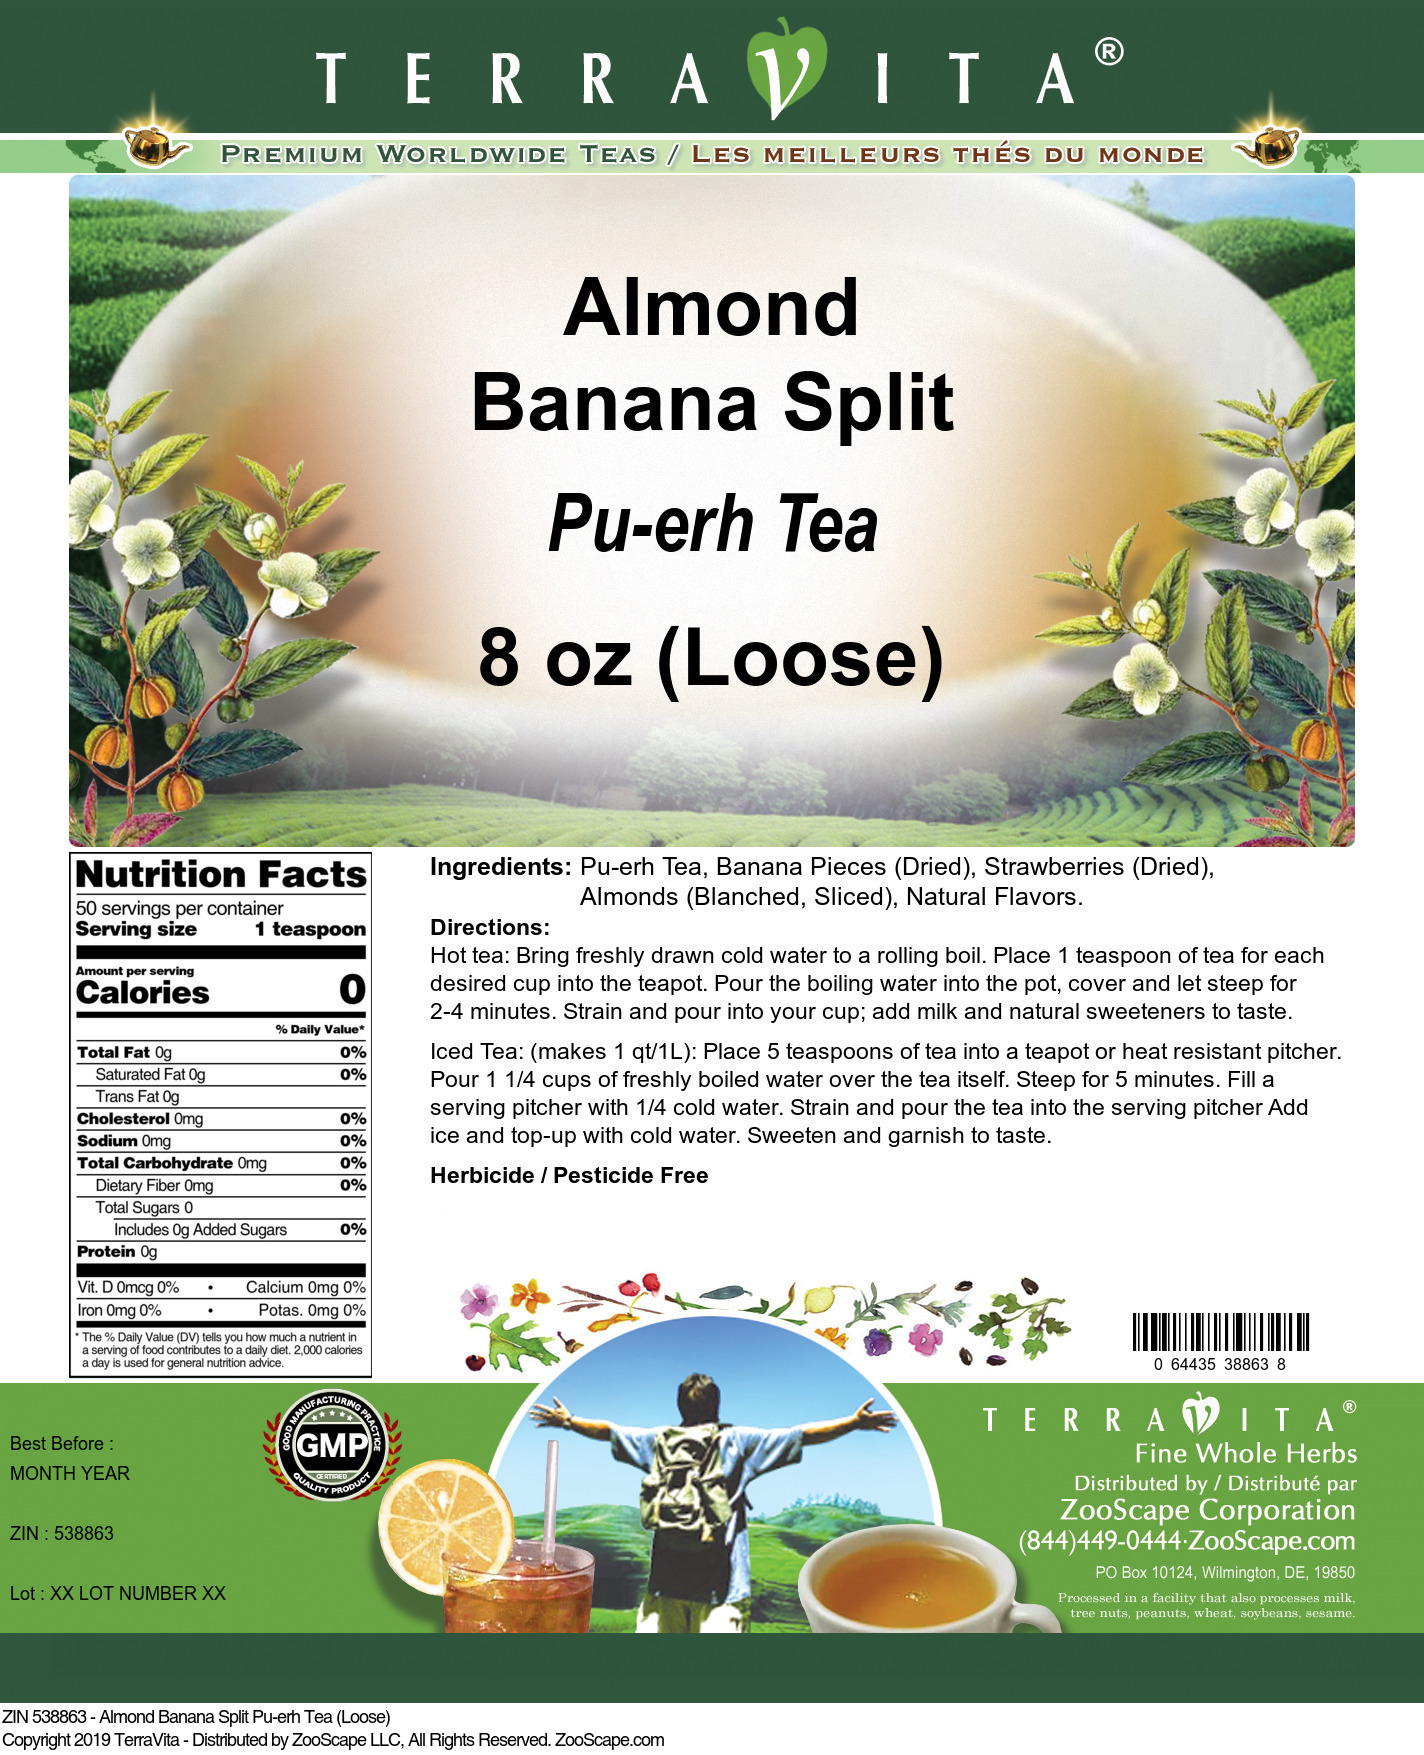 Almond Banana Split Pu-erh Tea (Loose) - Label